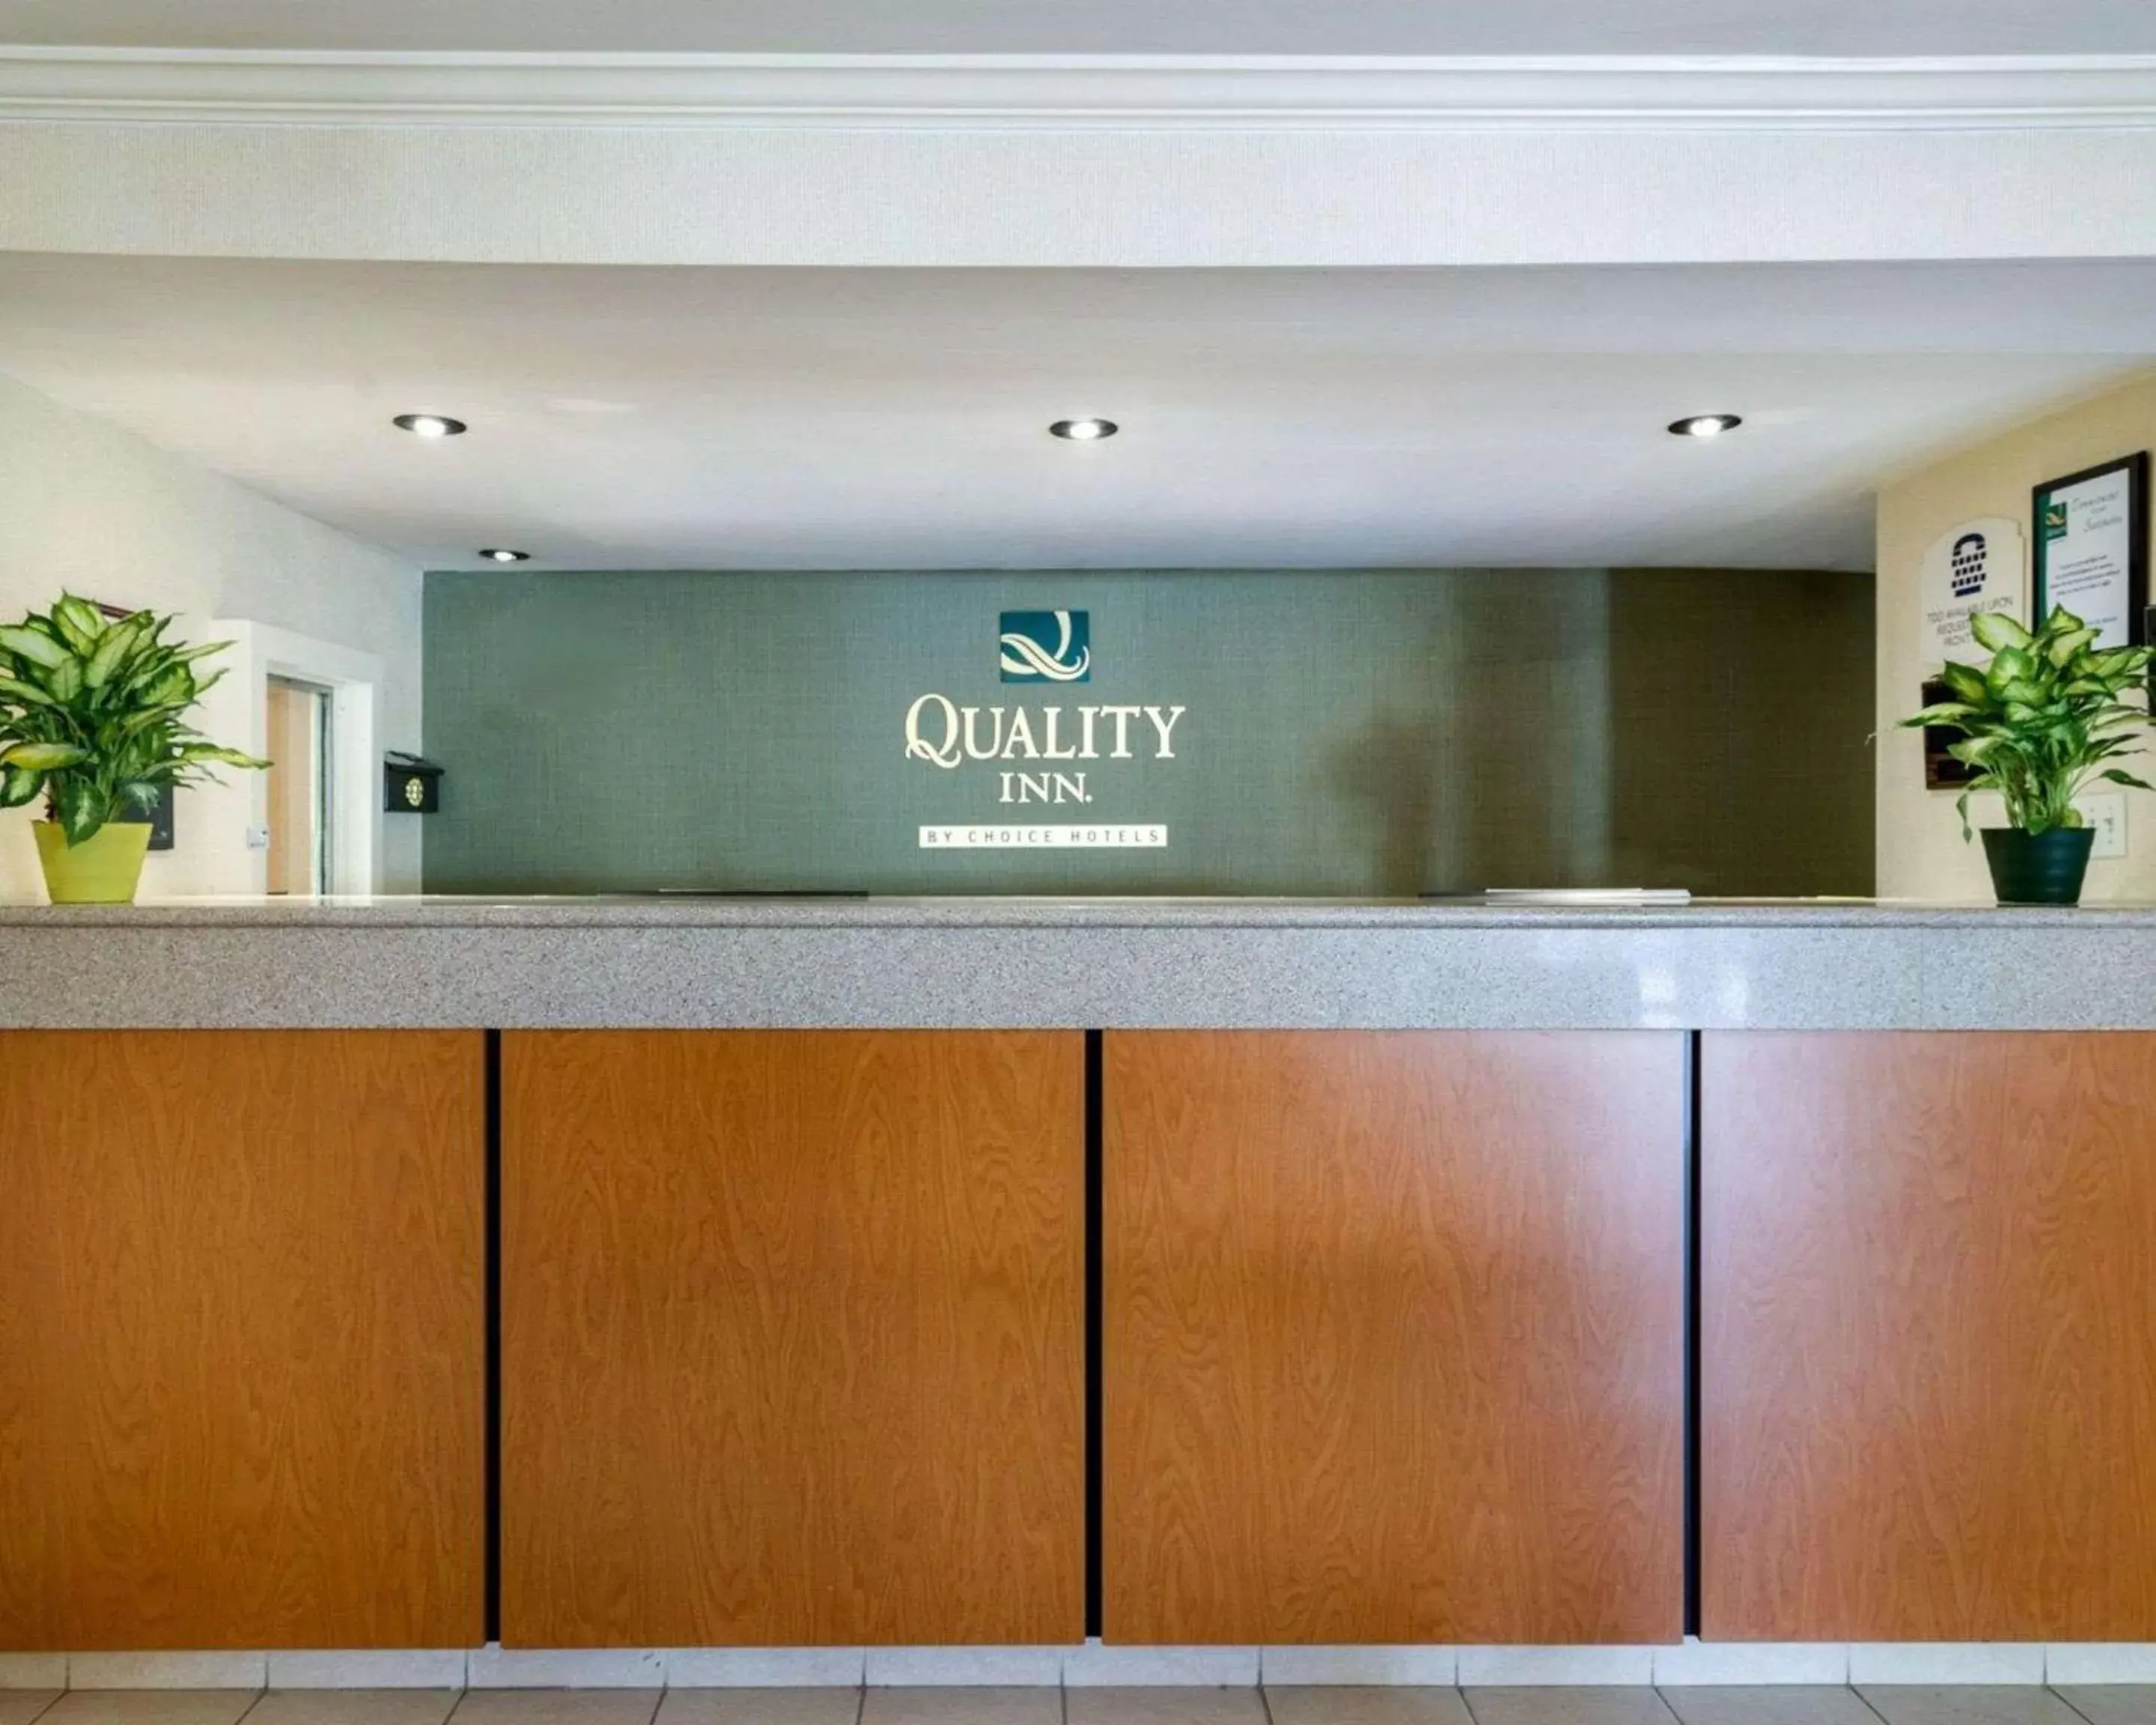 Lobby or reception, Lobby/Reception in Quality Inn Newark